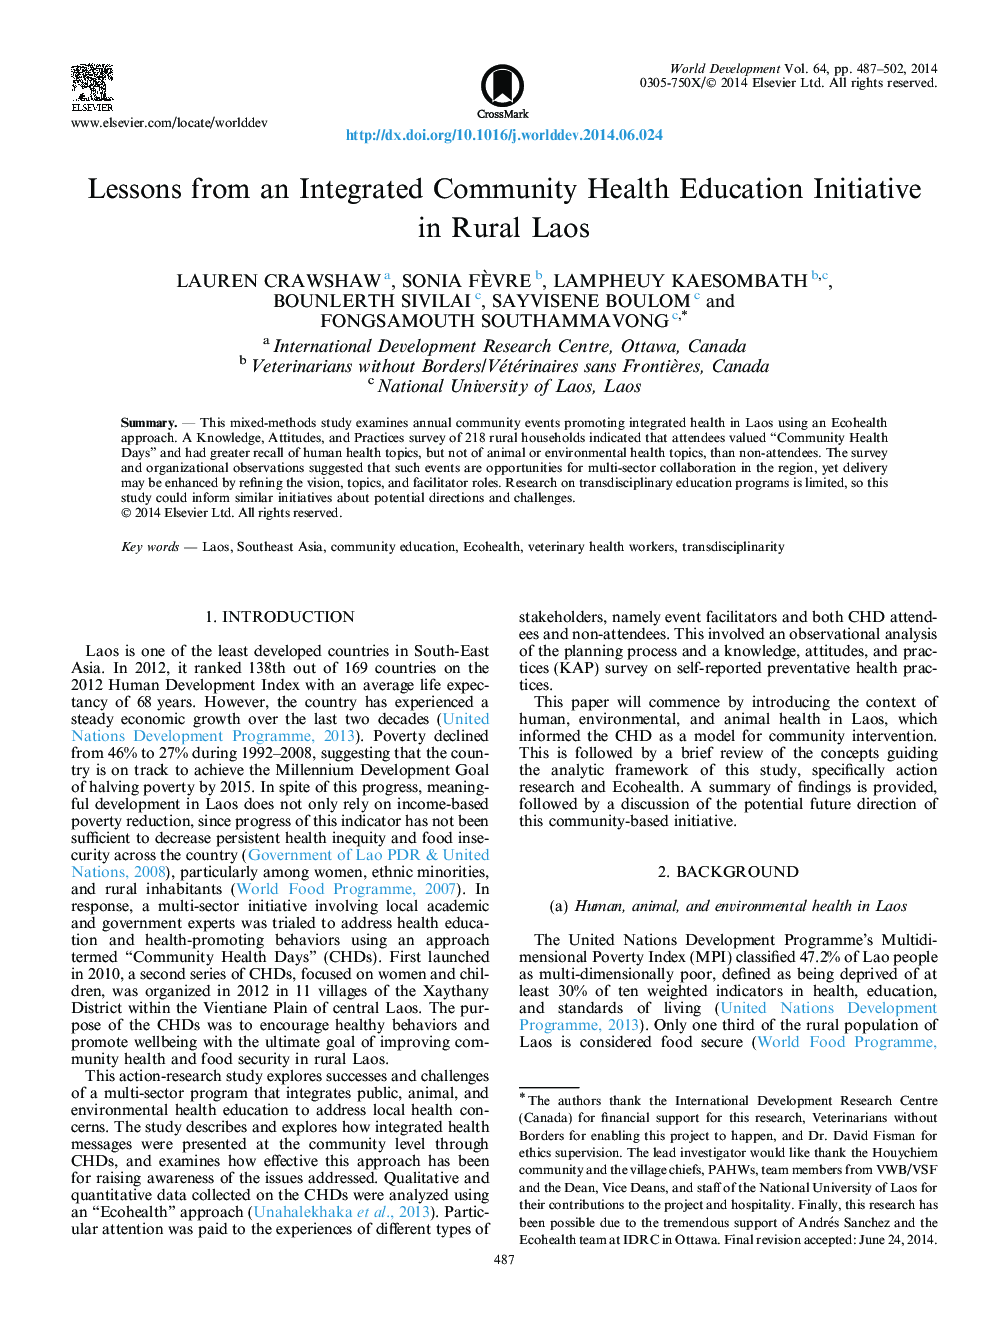 درسهای یک برنامه آموزشی جامع بهداشت عمومی در روستای لائوس 